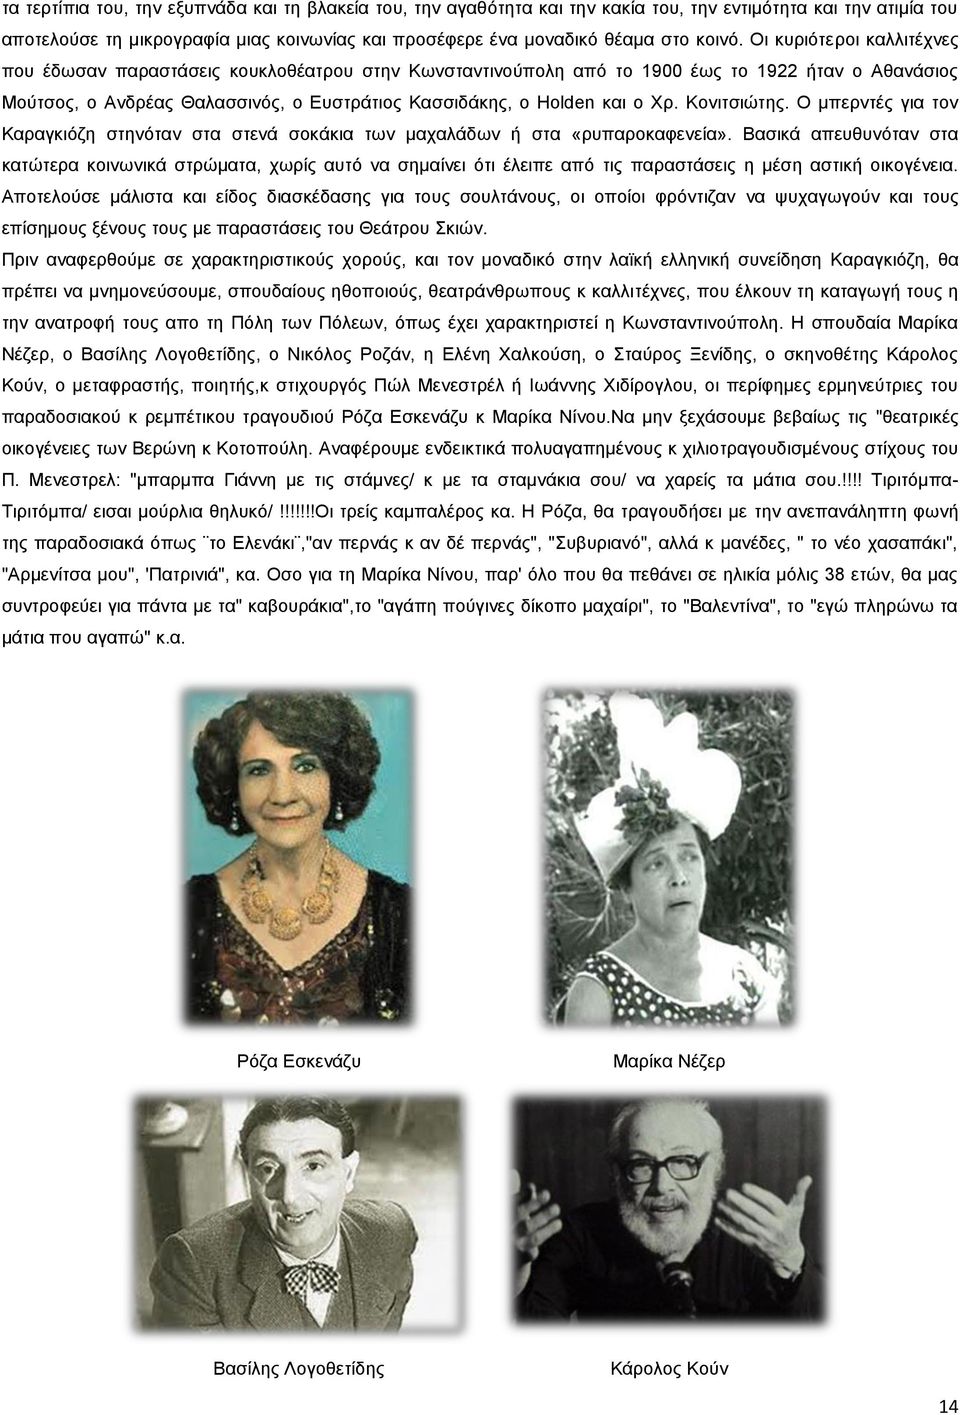 Οι κυριότεροι καλλιτέχνες που έδωσαν παραστάσεις κουκλοθέατρου στην Κωνσταντινούπολη από το 1900 έως το 1922 ήταν ο Αθανάσιος Μούτσος, ο Ανδρέας Θαλασσινός, ο Ευστράτιος Κασσιδάκης, ο Holden και ο Χρ.